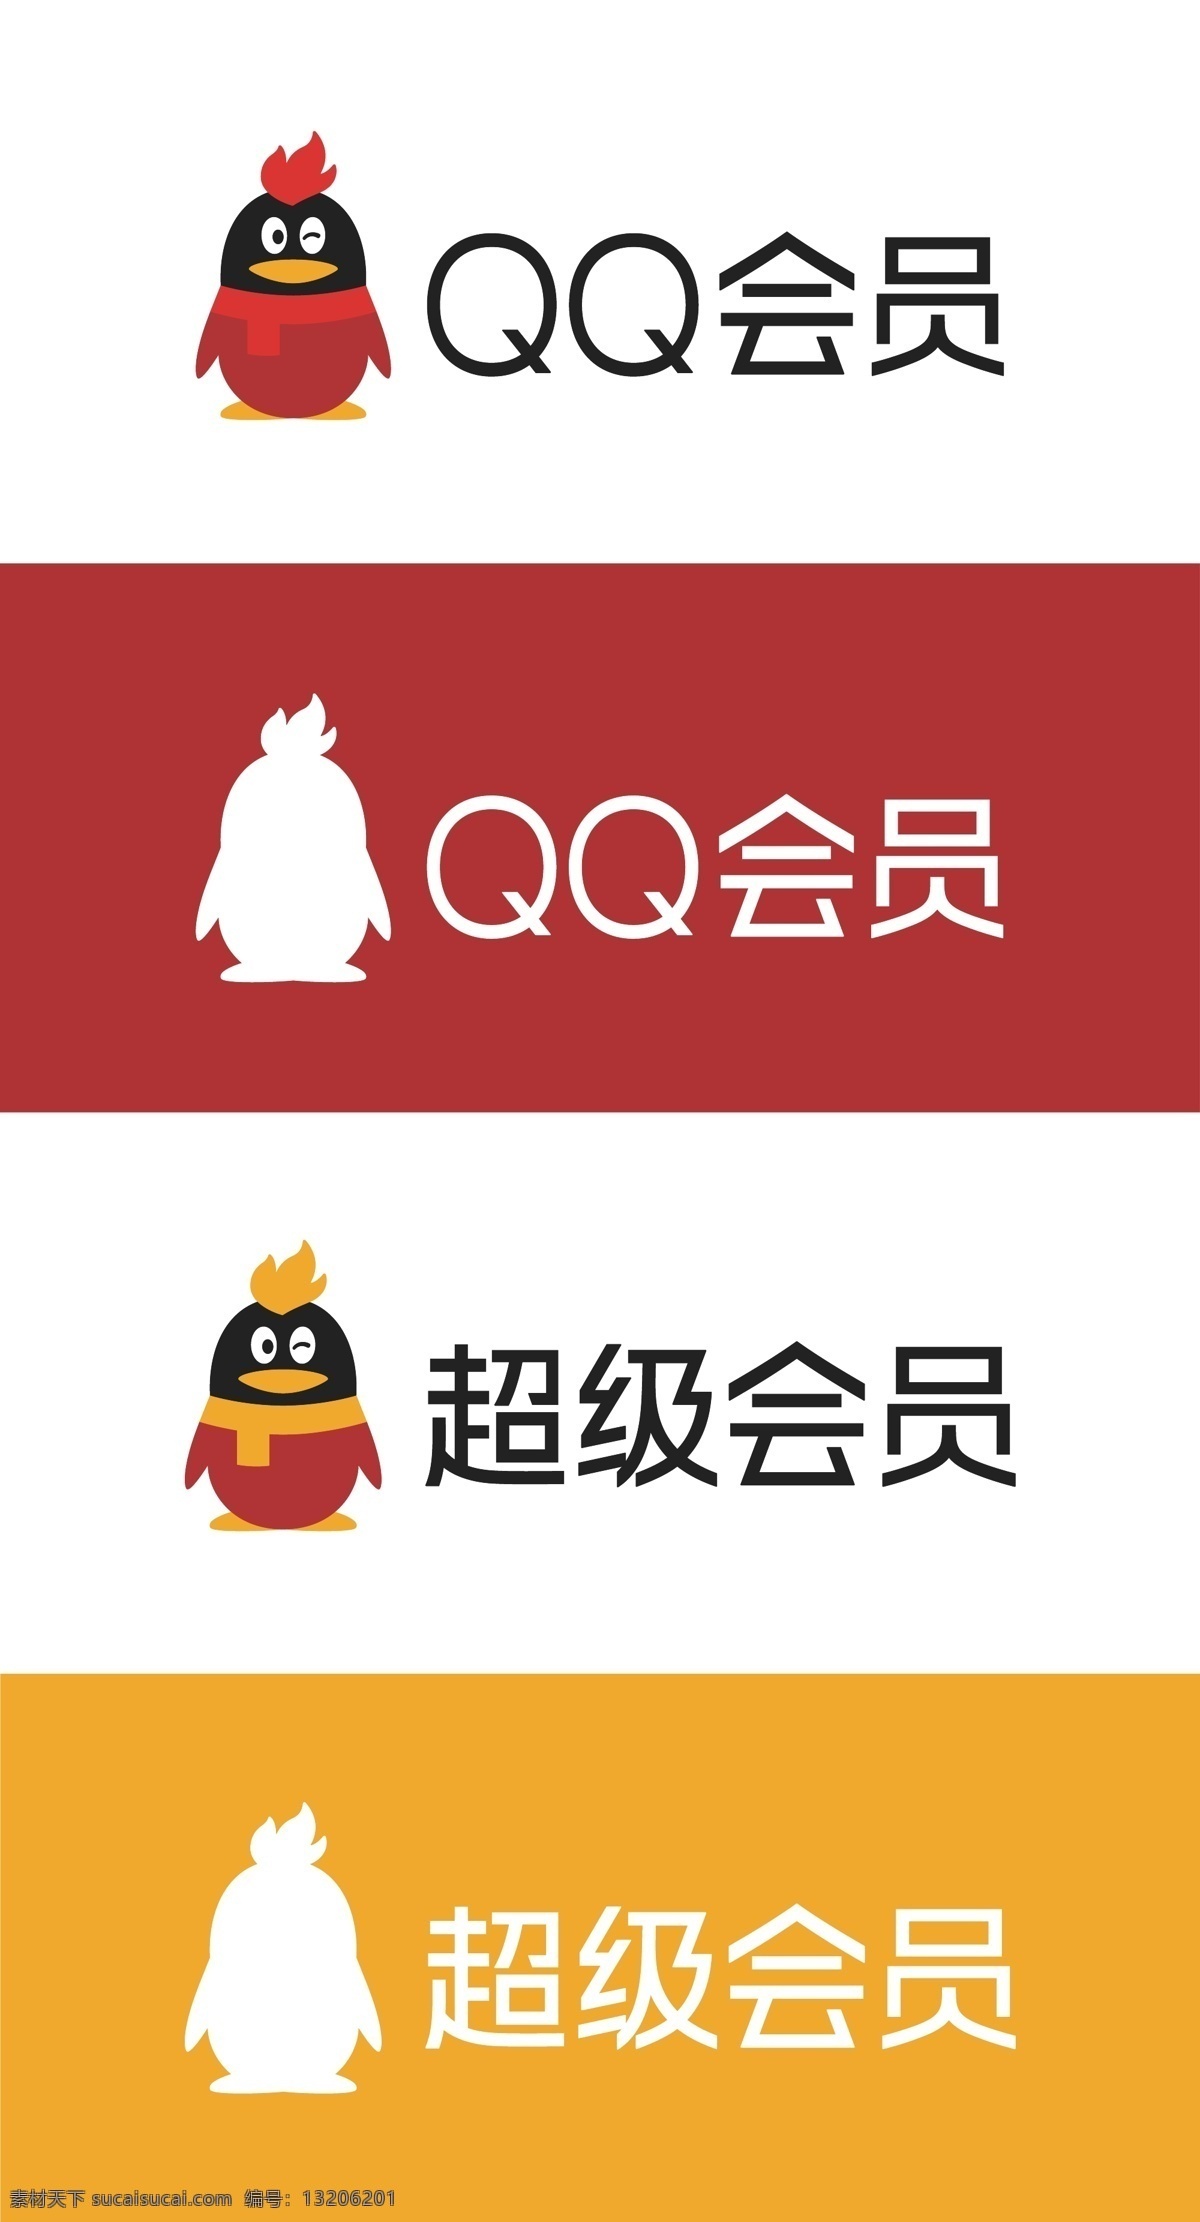 qq 会员 超级 超级会员 qq会员 腾讯 图标 矢量 小图标 腾讯qq logo